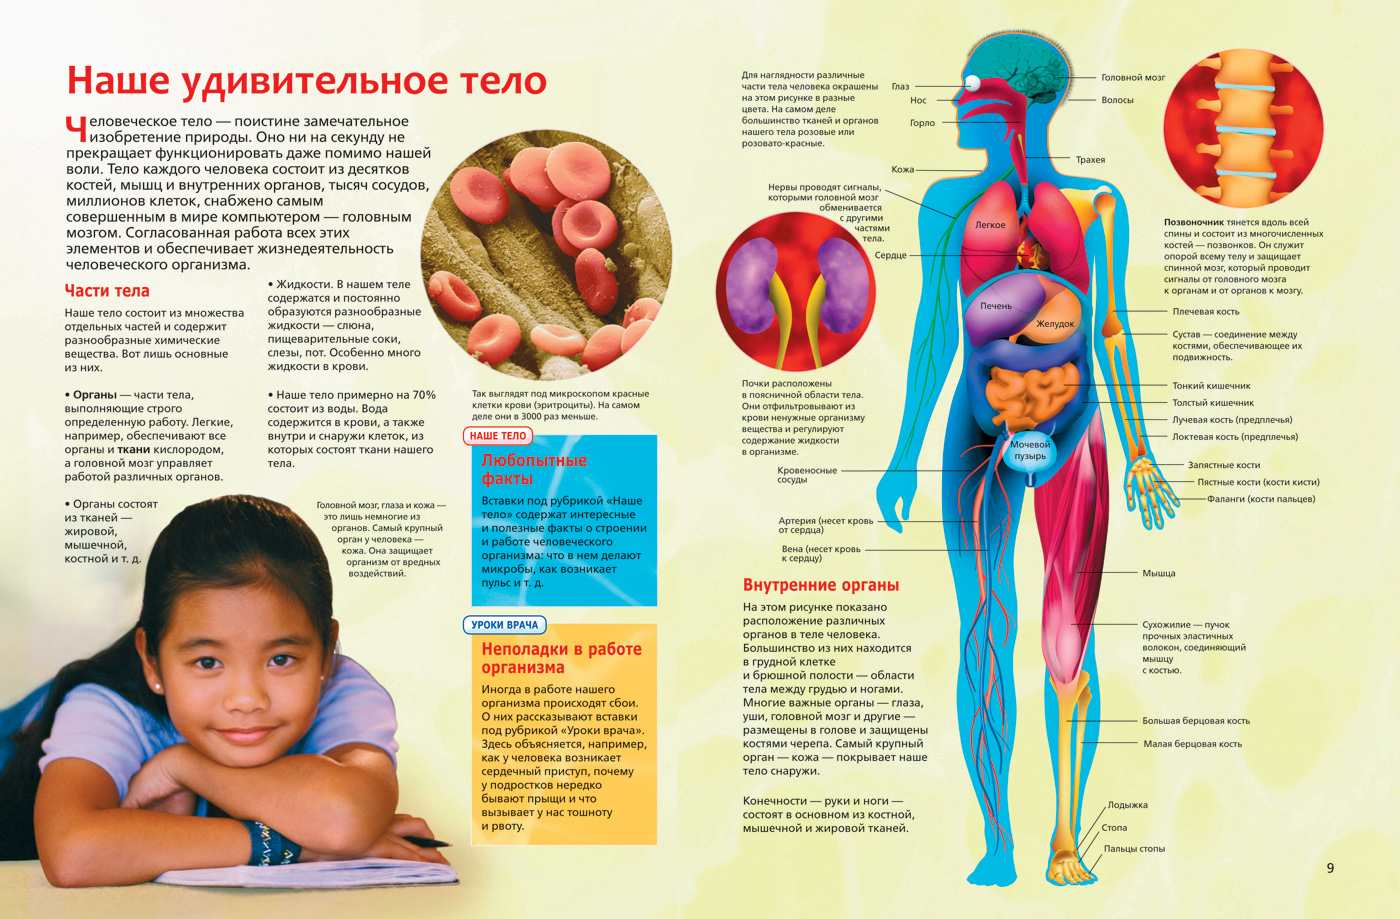 Интересные факты о теле и органов человека